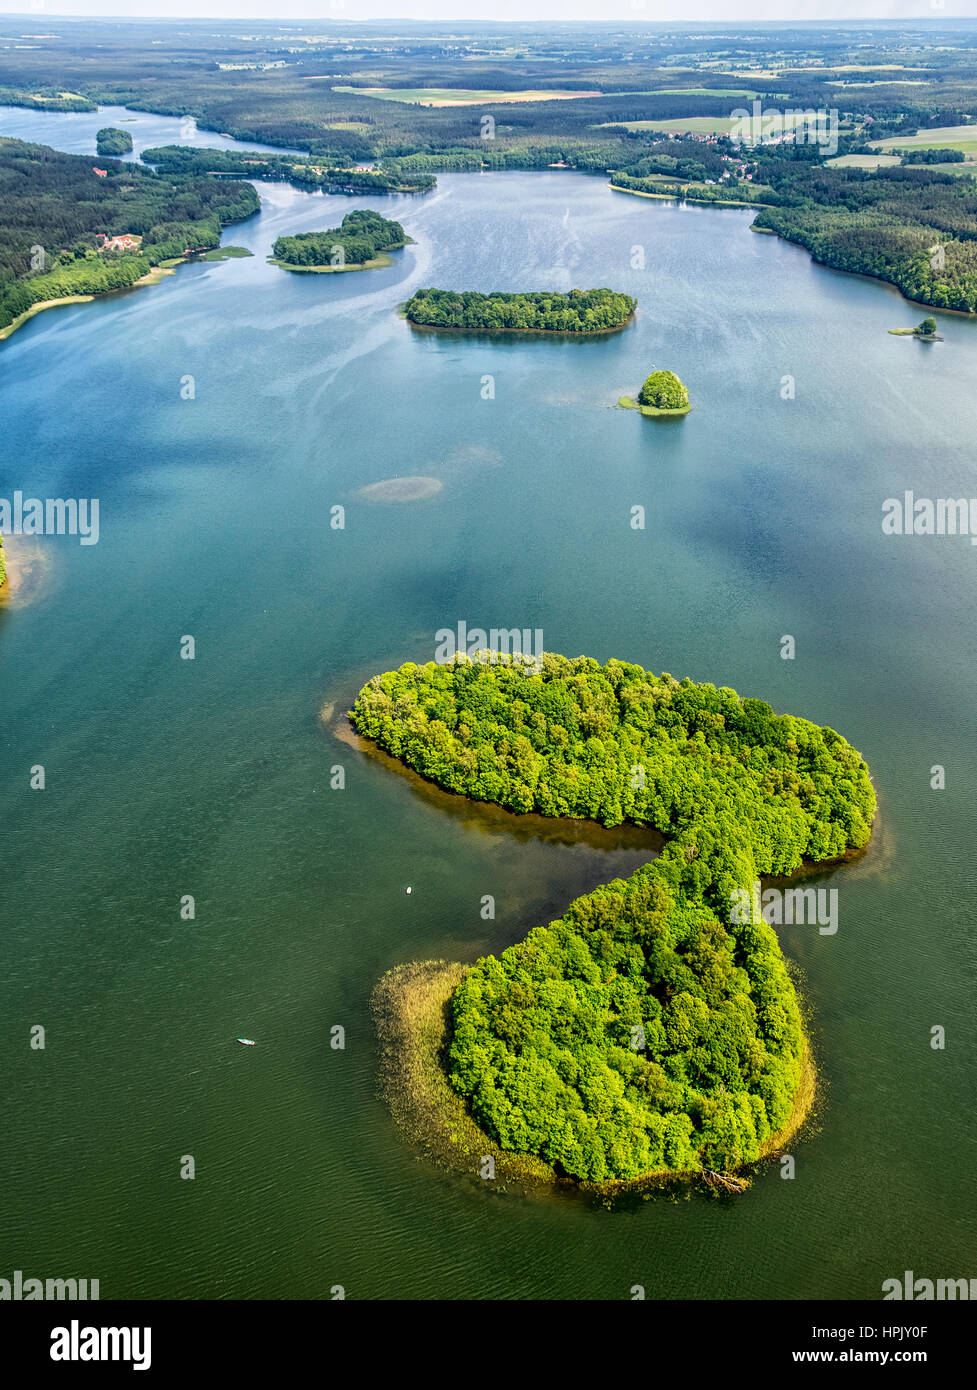 Seenlandschaft, Pommern, Spiegelung, bewaldete Insel, Leśnice, Ostseeküste, Pomorskie, Polen Foto Stock